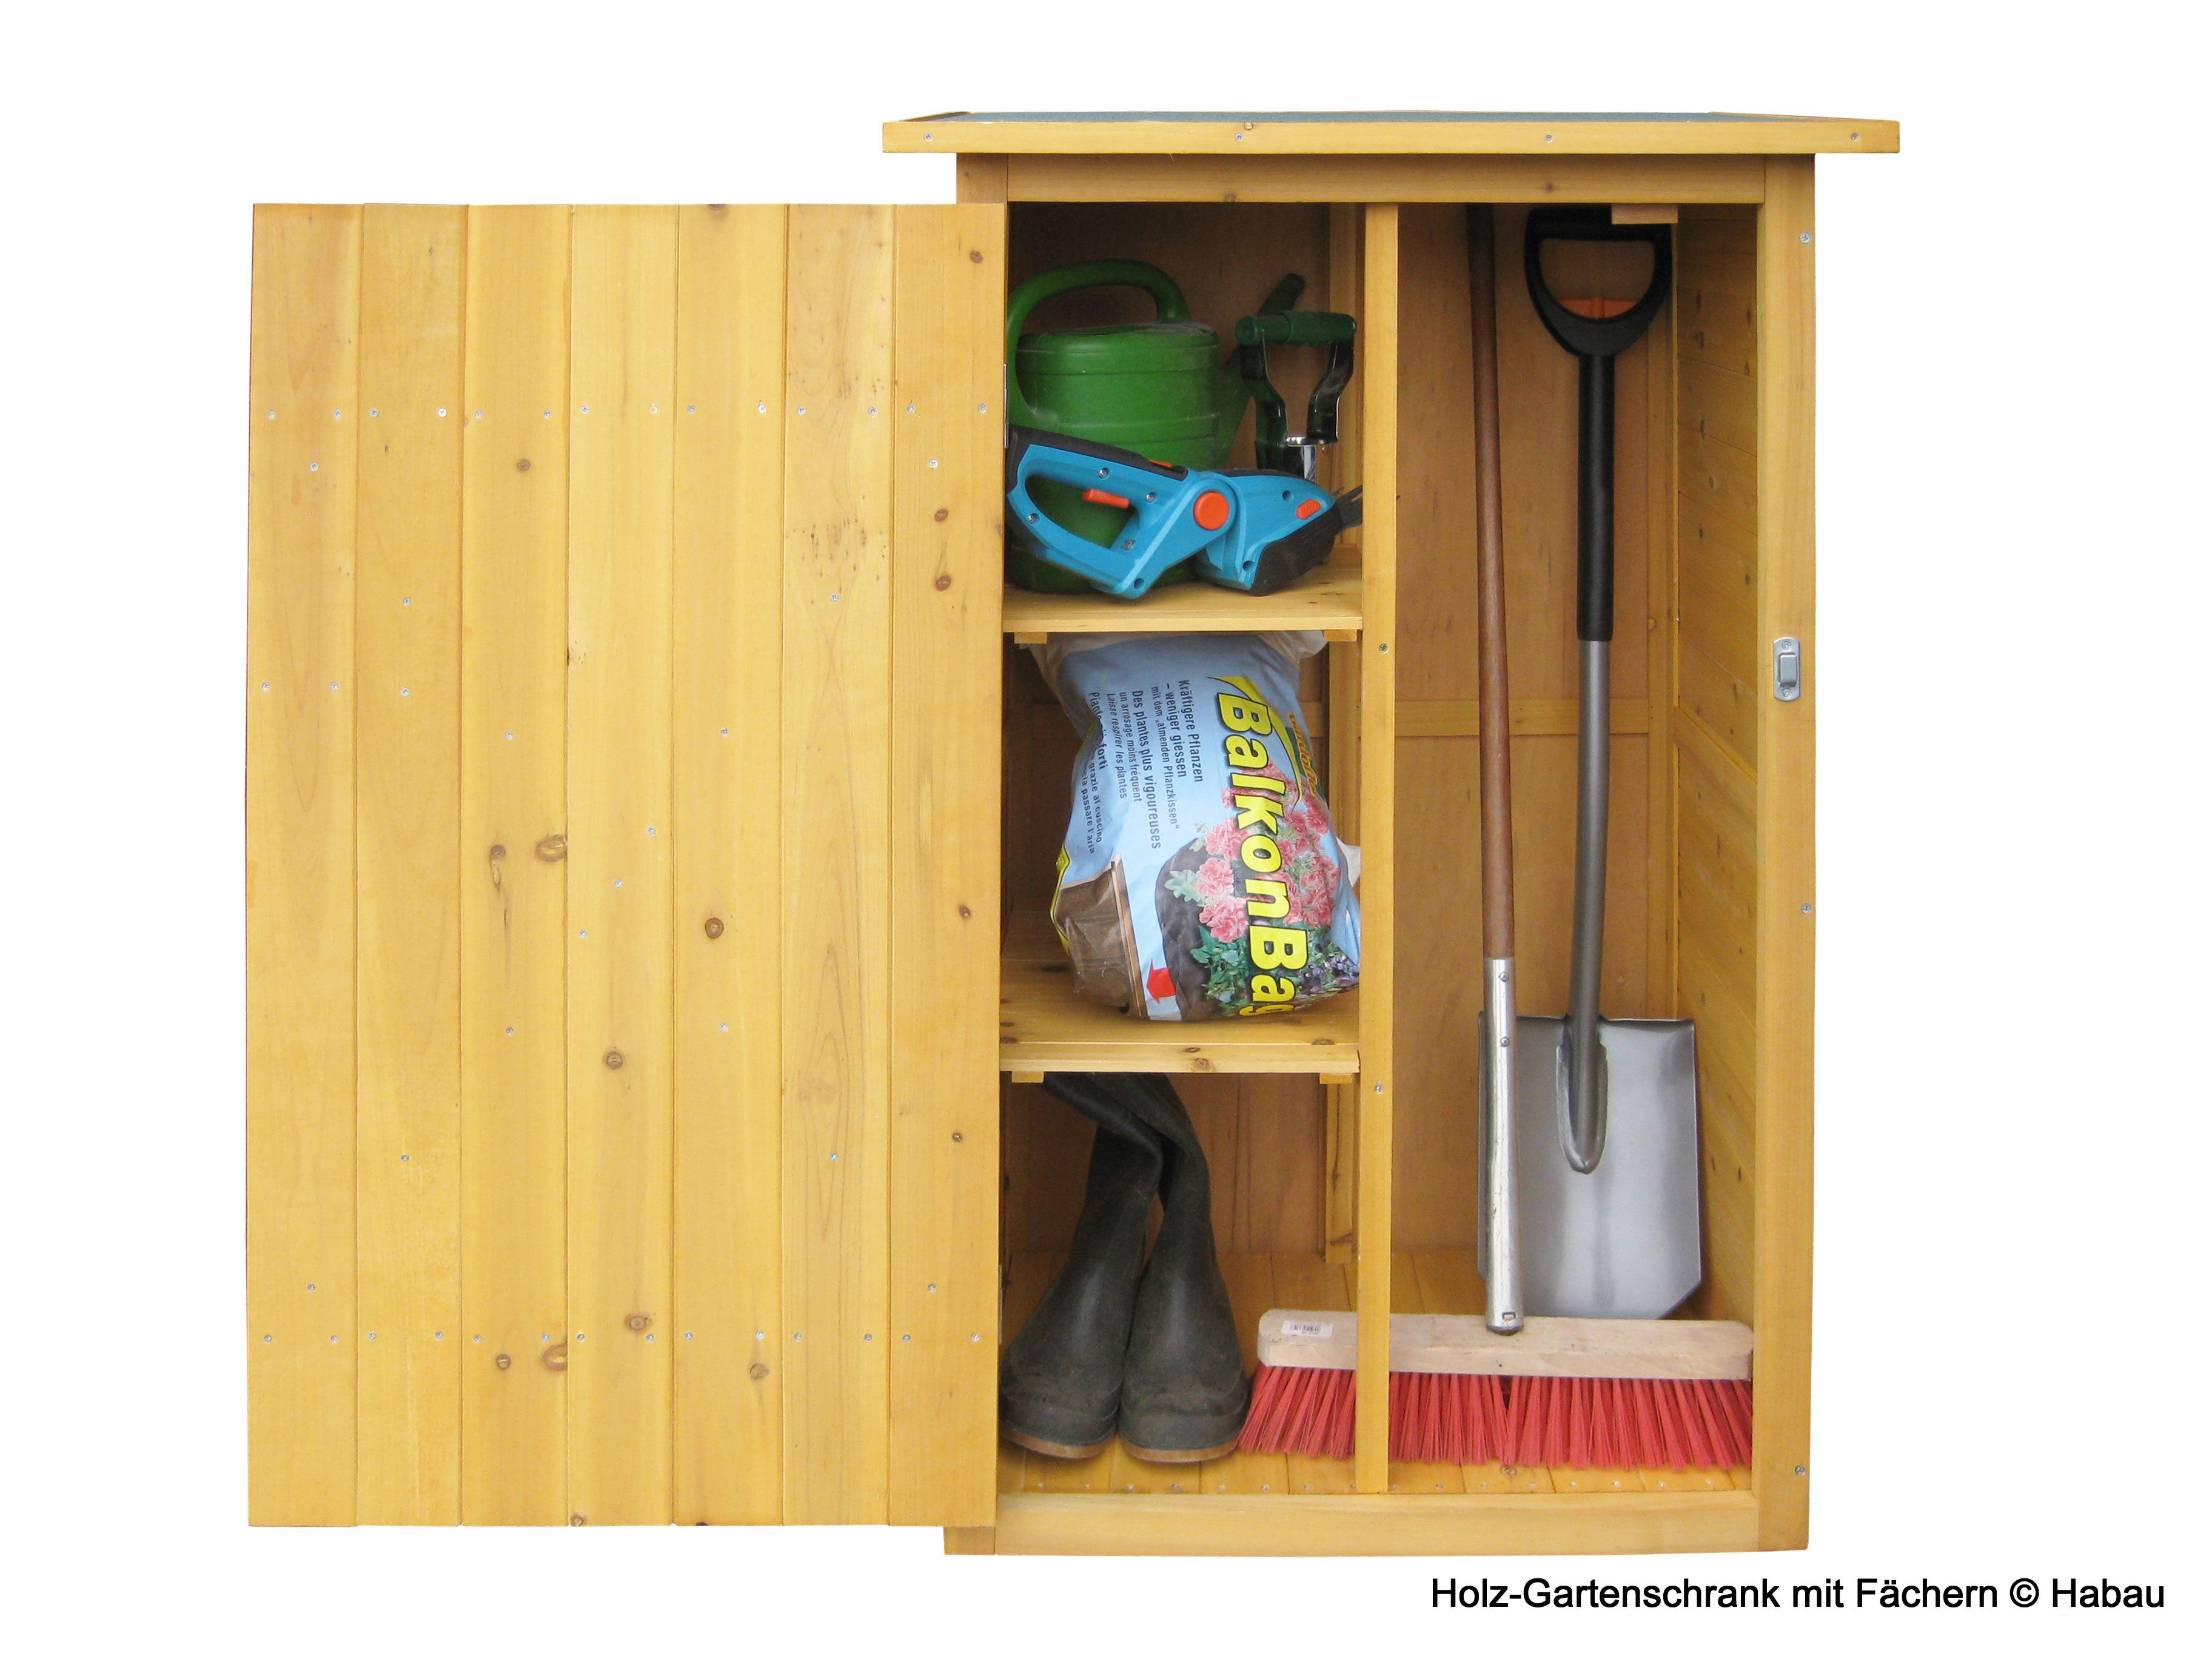 шкаф для хозяйственного инвентаря деревянный